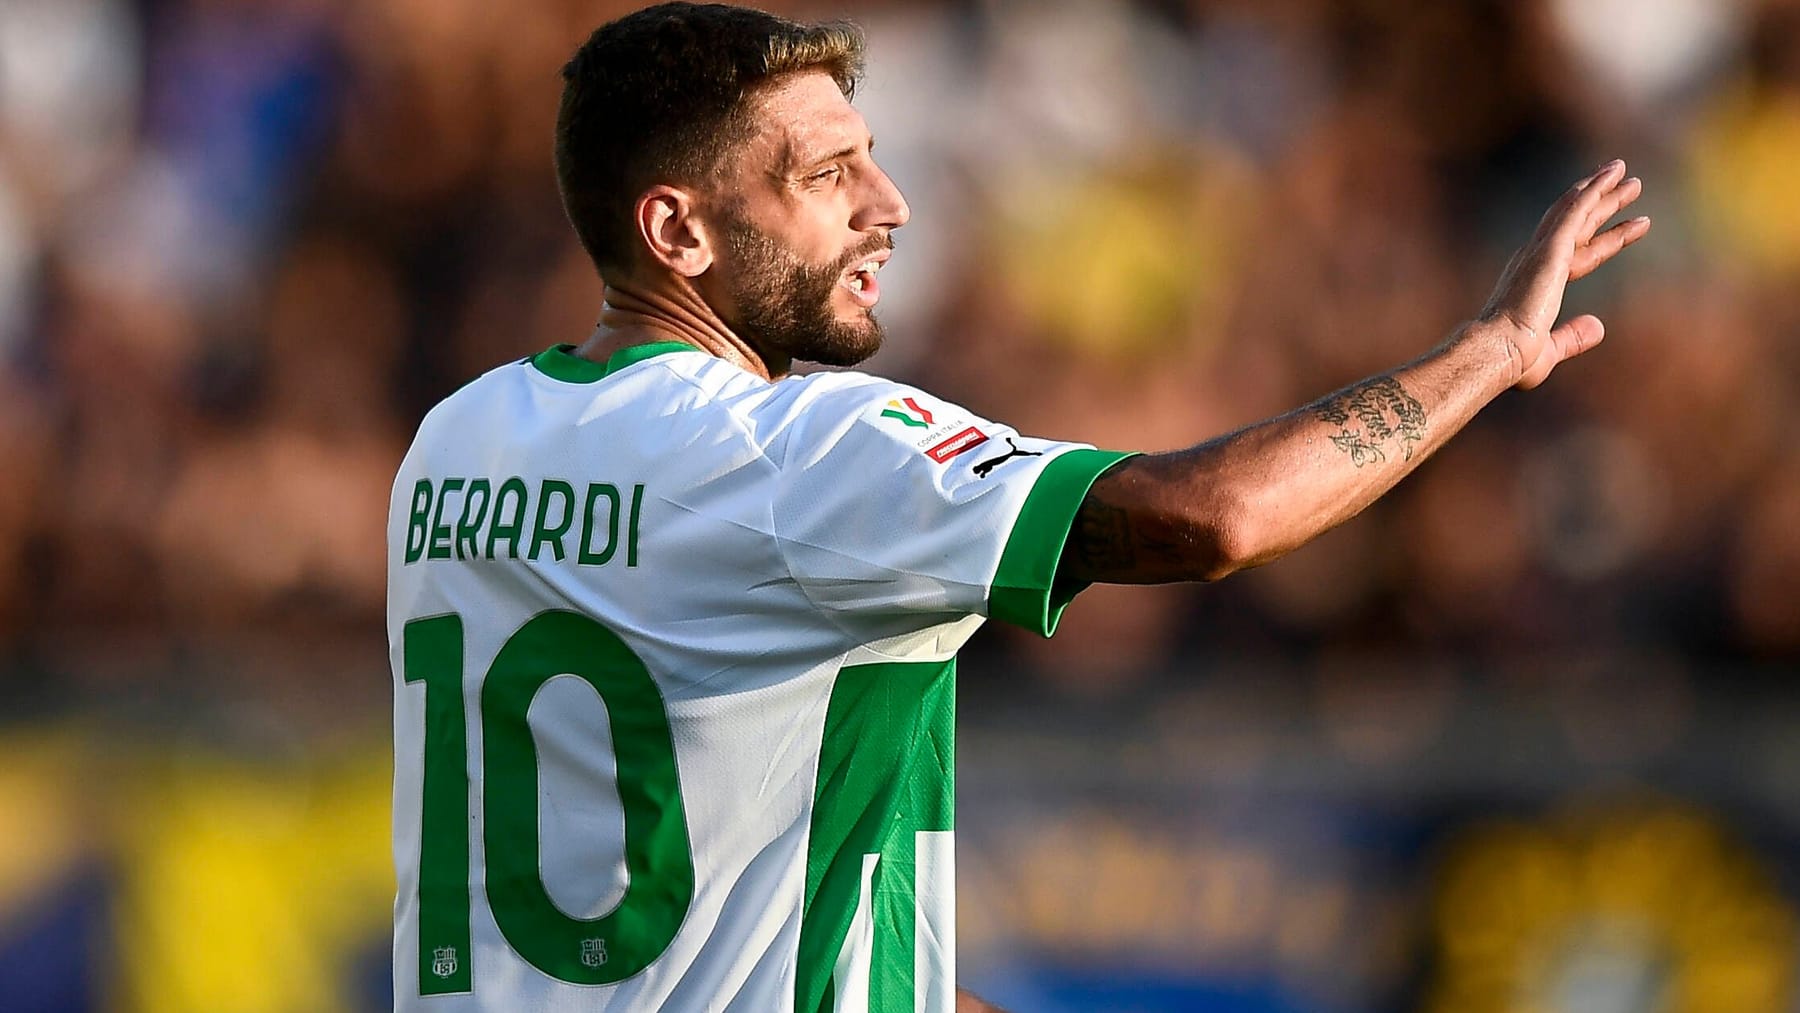 La stella del calcio italiano Domenico Berardi attacca un tifoso